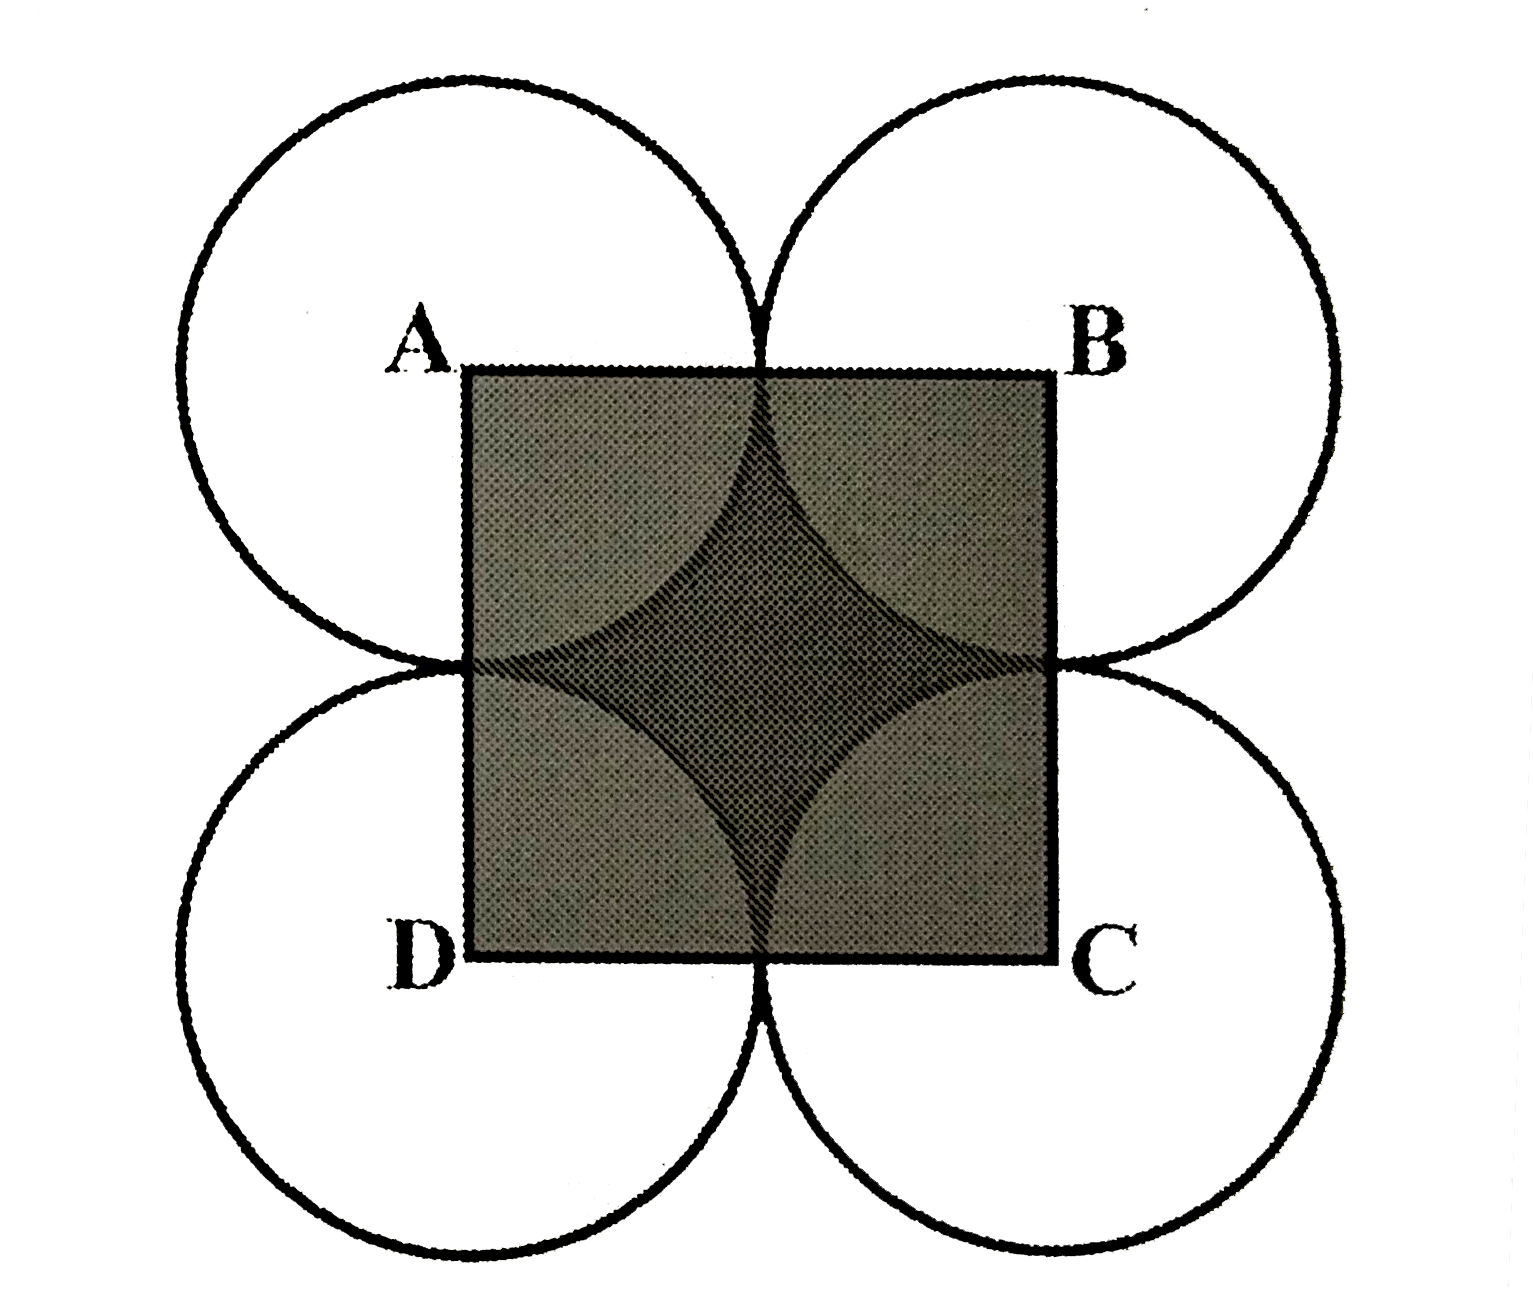 आकृति में ABCD भुजा 14 सेमी वाला वर्ग हैं A,B,C तथा  D को केंद्र मानकर, चार वृत्त इस प्रकार खींचे गए है कि प्रत्येक वृत्त तीन शेष वृत्तों में से दो वृत्तों को बाह्य रूप से स्पर्श करता है । छायांकित भाग का क्षेत्रफल ज्ञात कीजिए।